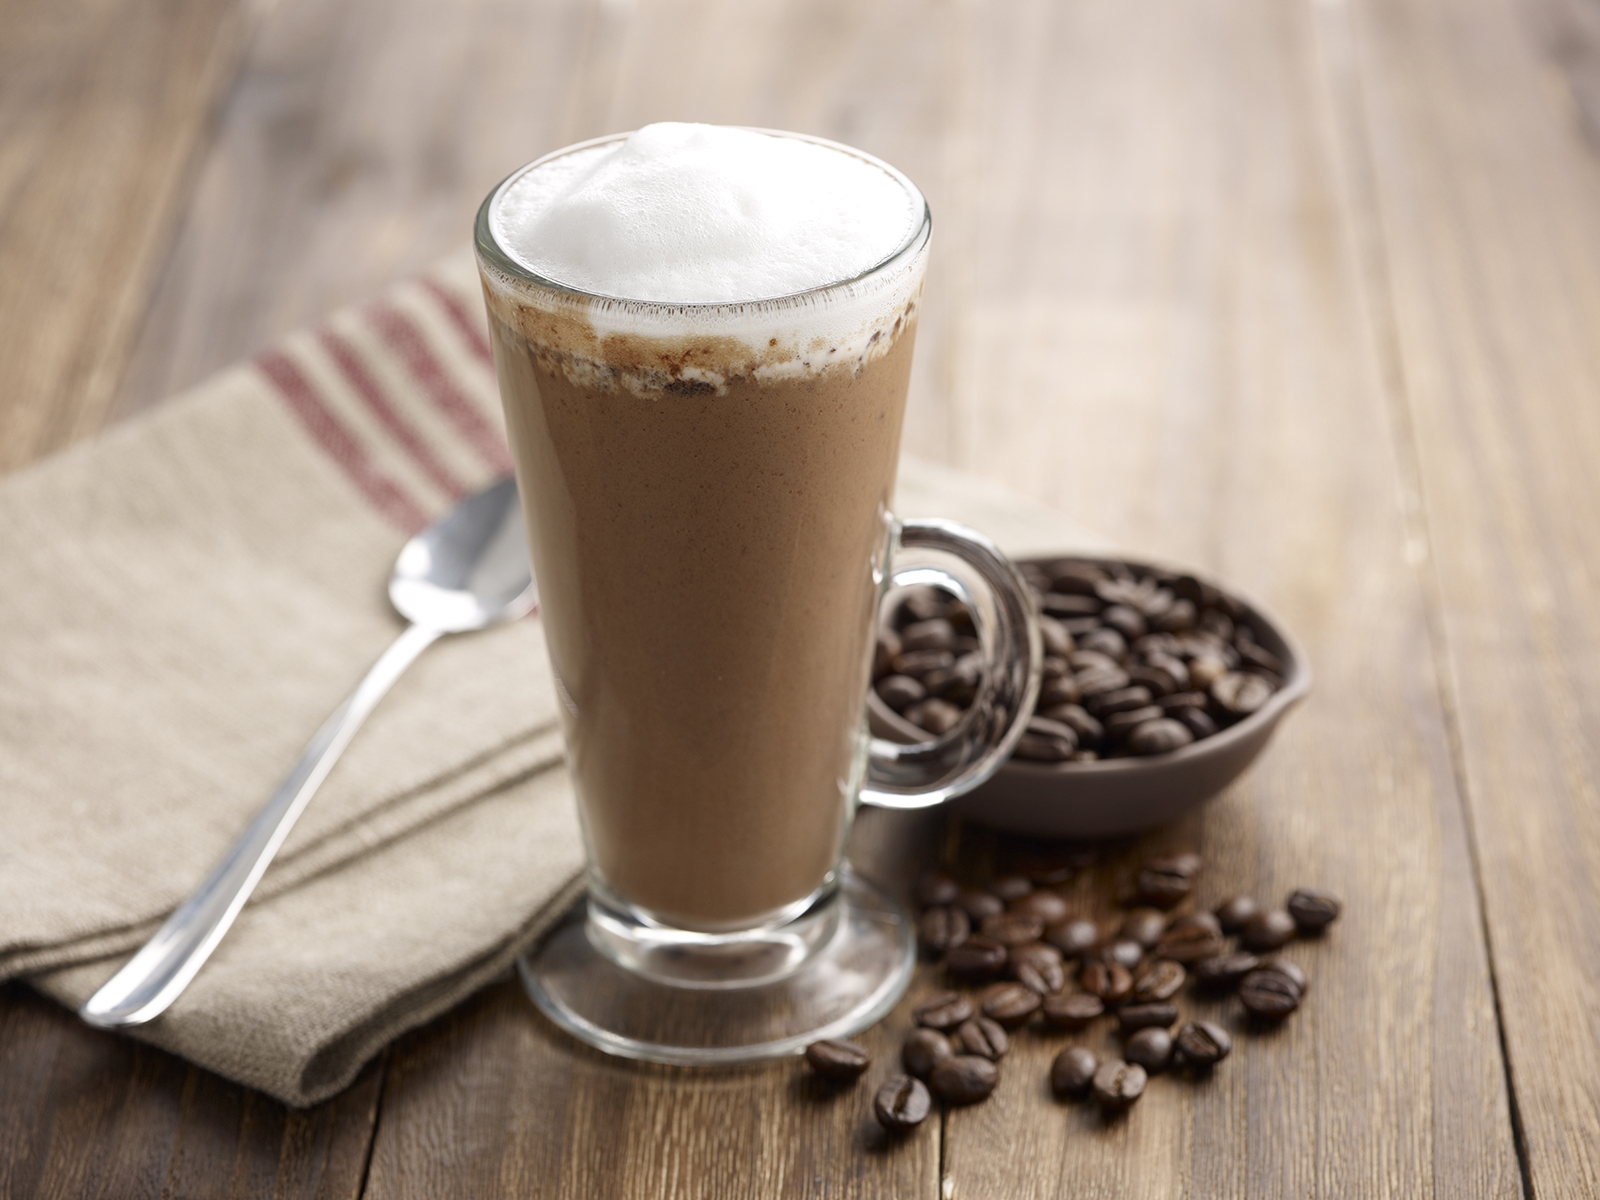 Как приготовить кофе как в кофемашине: виды кофе в кофемашине